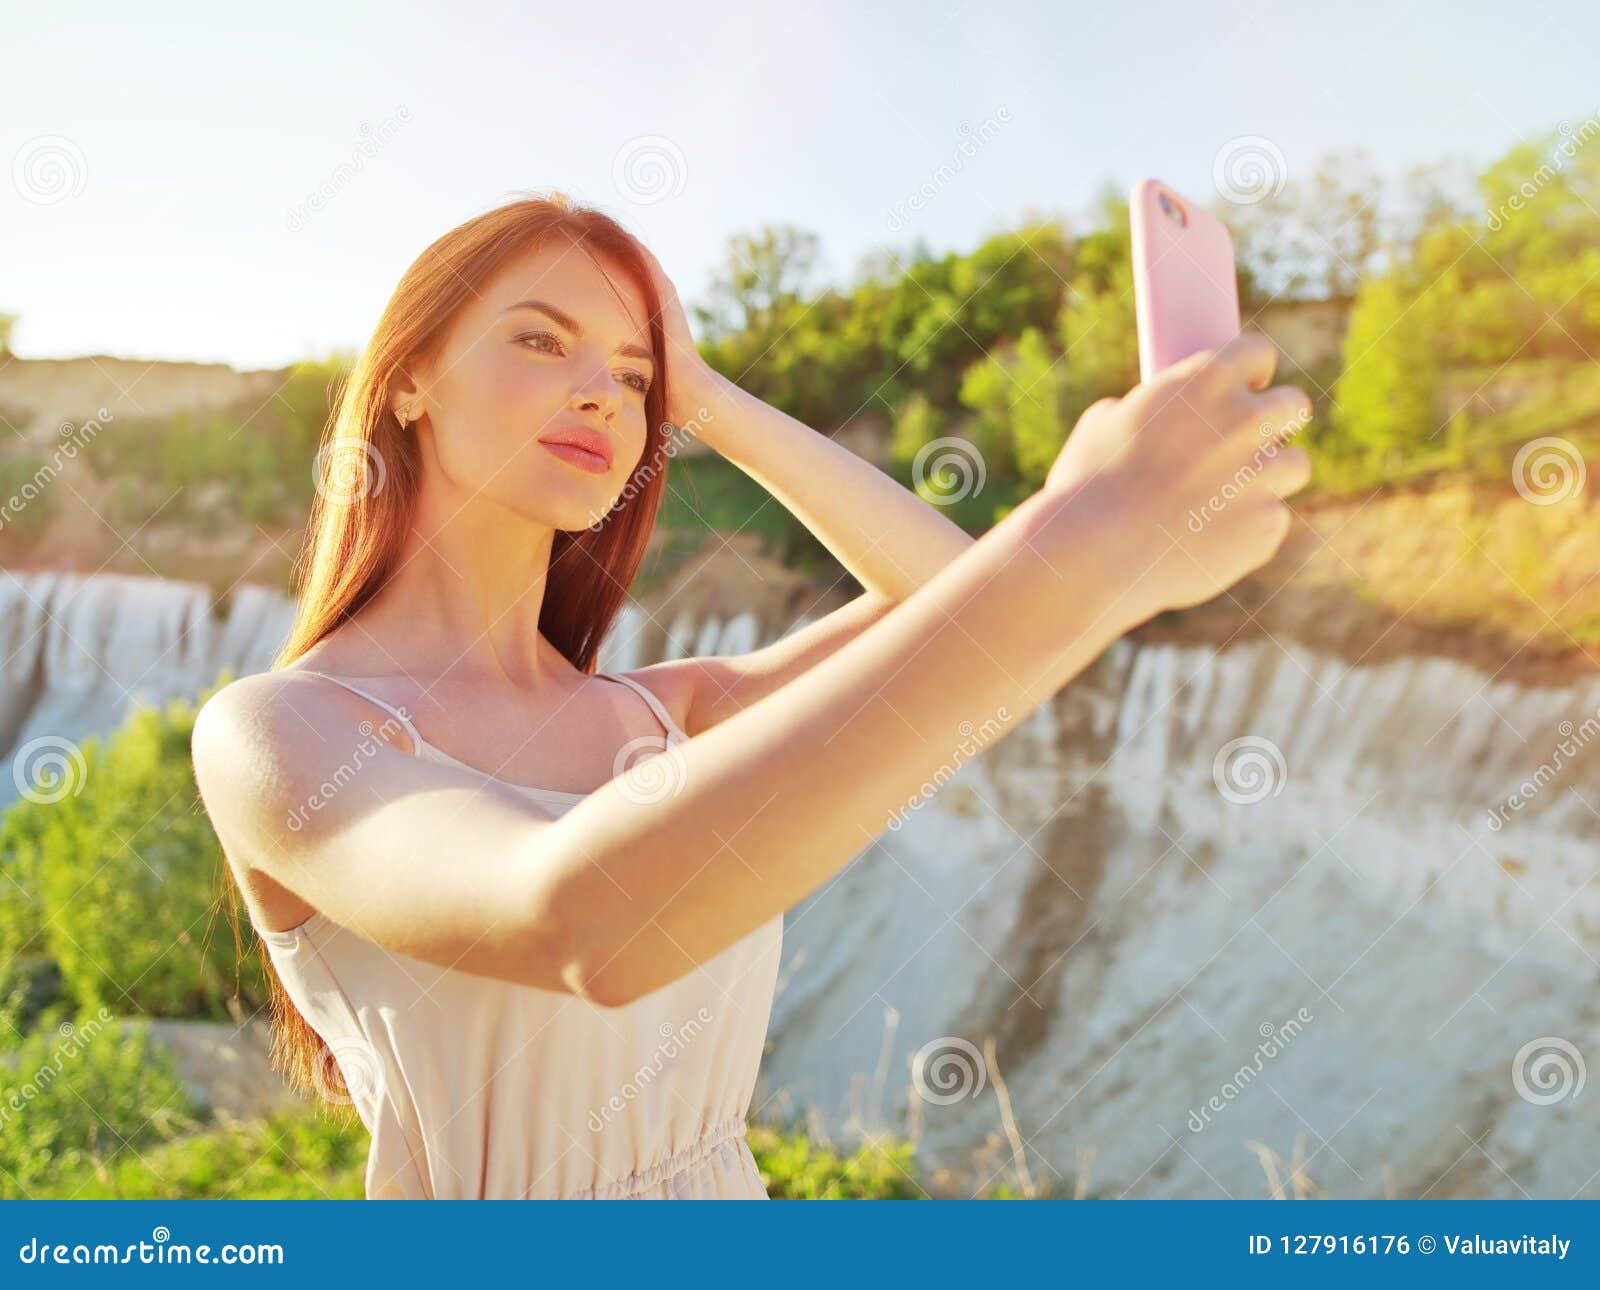 outdoor women selfies